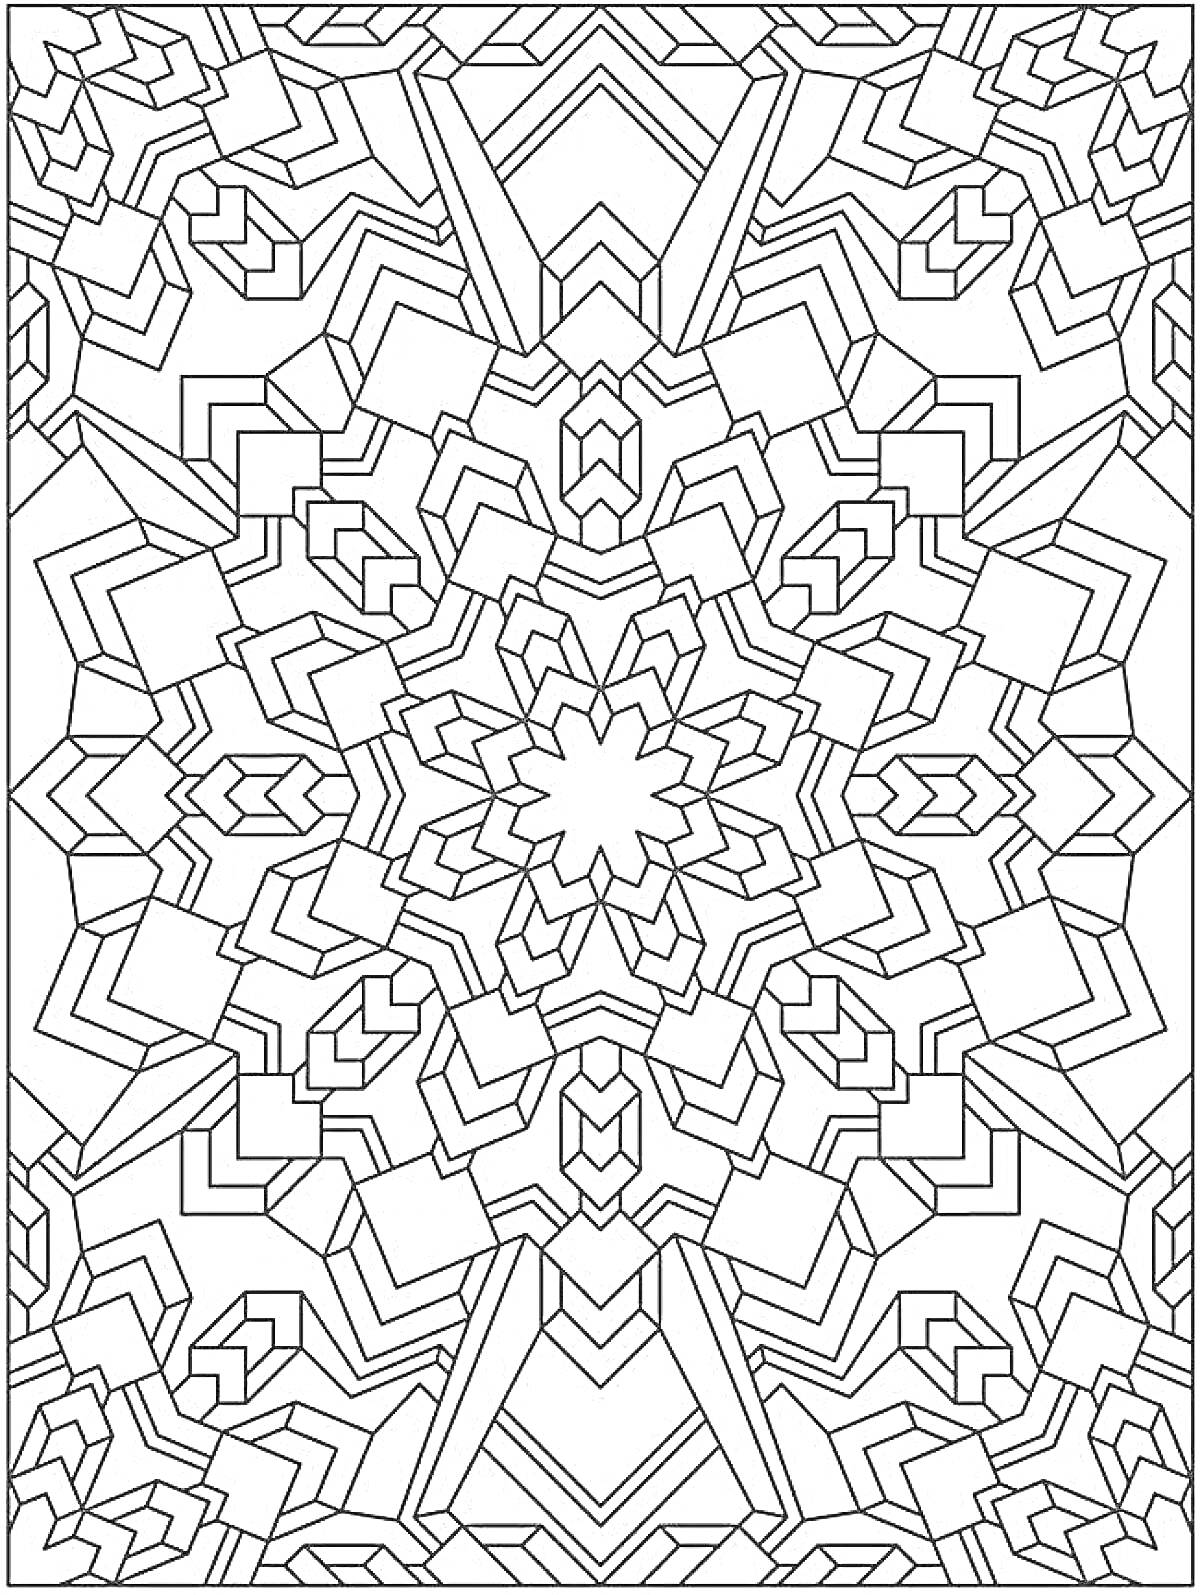 Раскраска Геометрическая мандала с многослойными узорами и центральной звездой